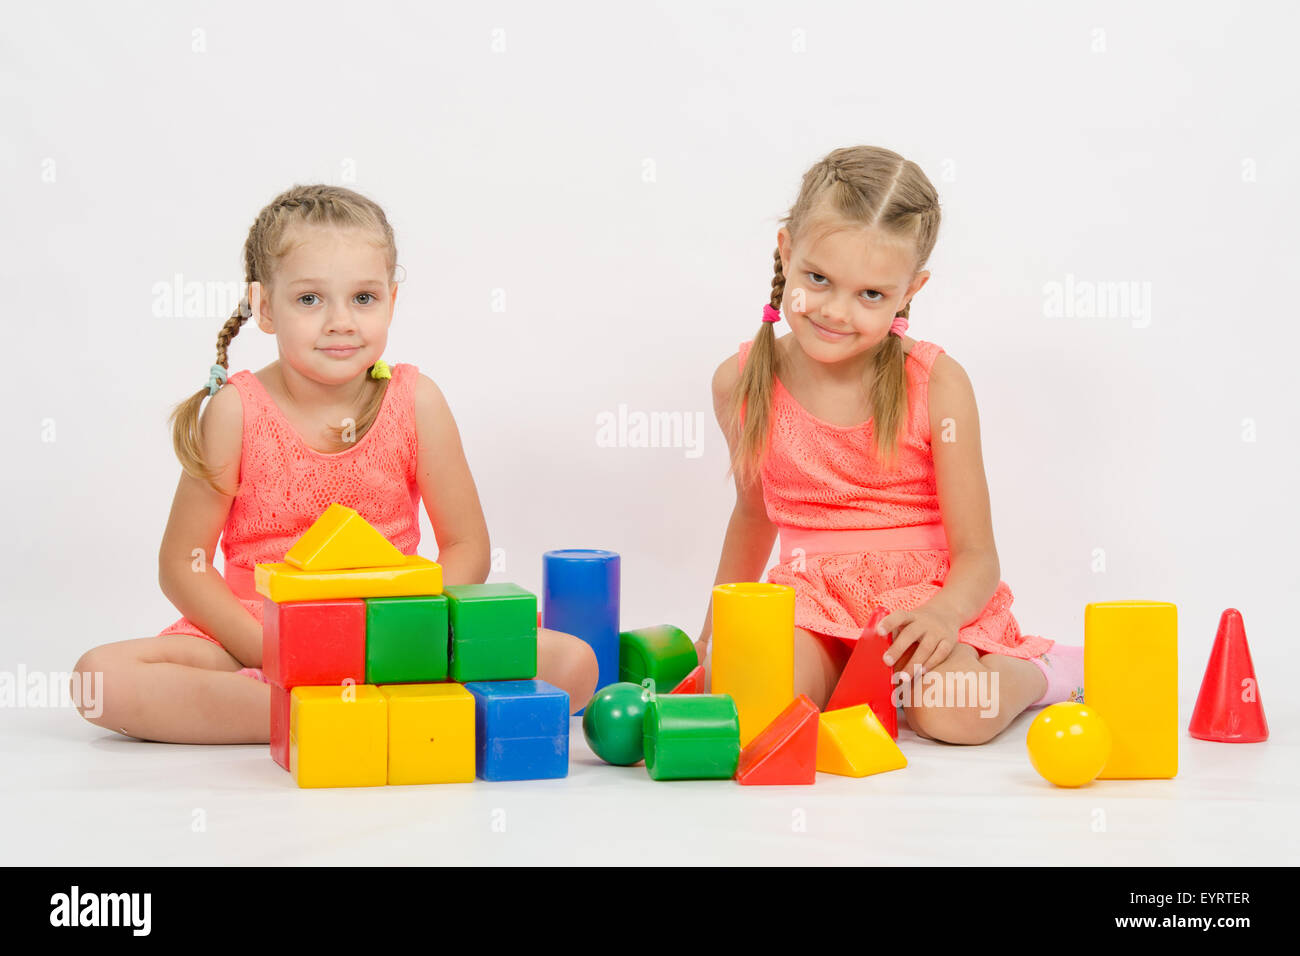 Die vier Jahre und sechs - jähriges Mädchen spielen in einem europäisch anmutenden Würfel, isoliert auf einem hellen Hintergrund Stockfoto